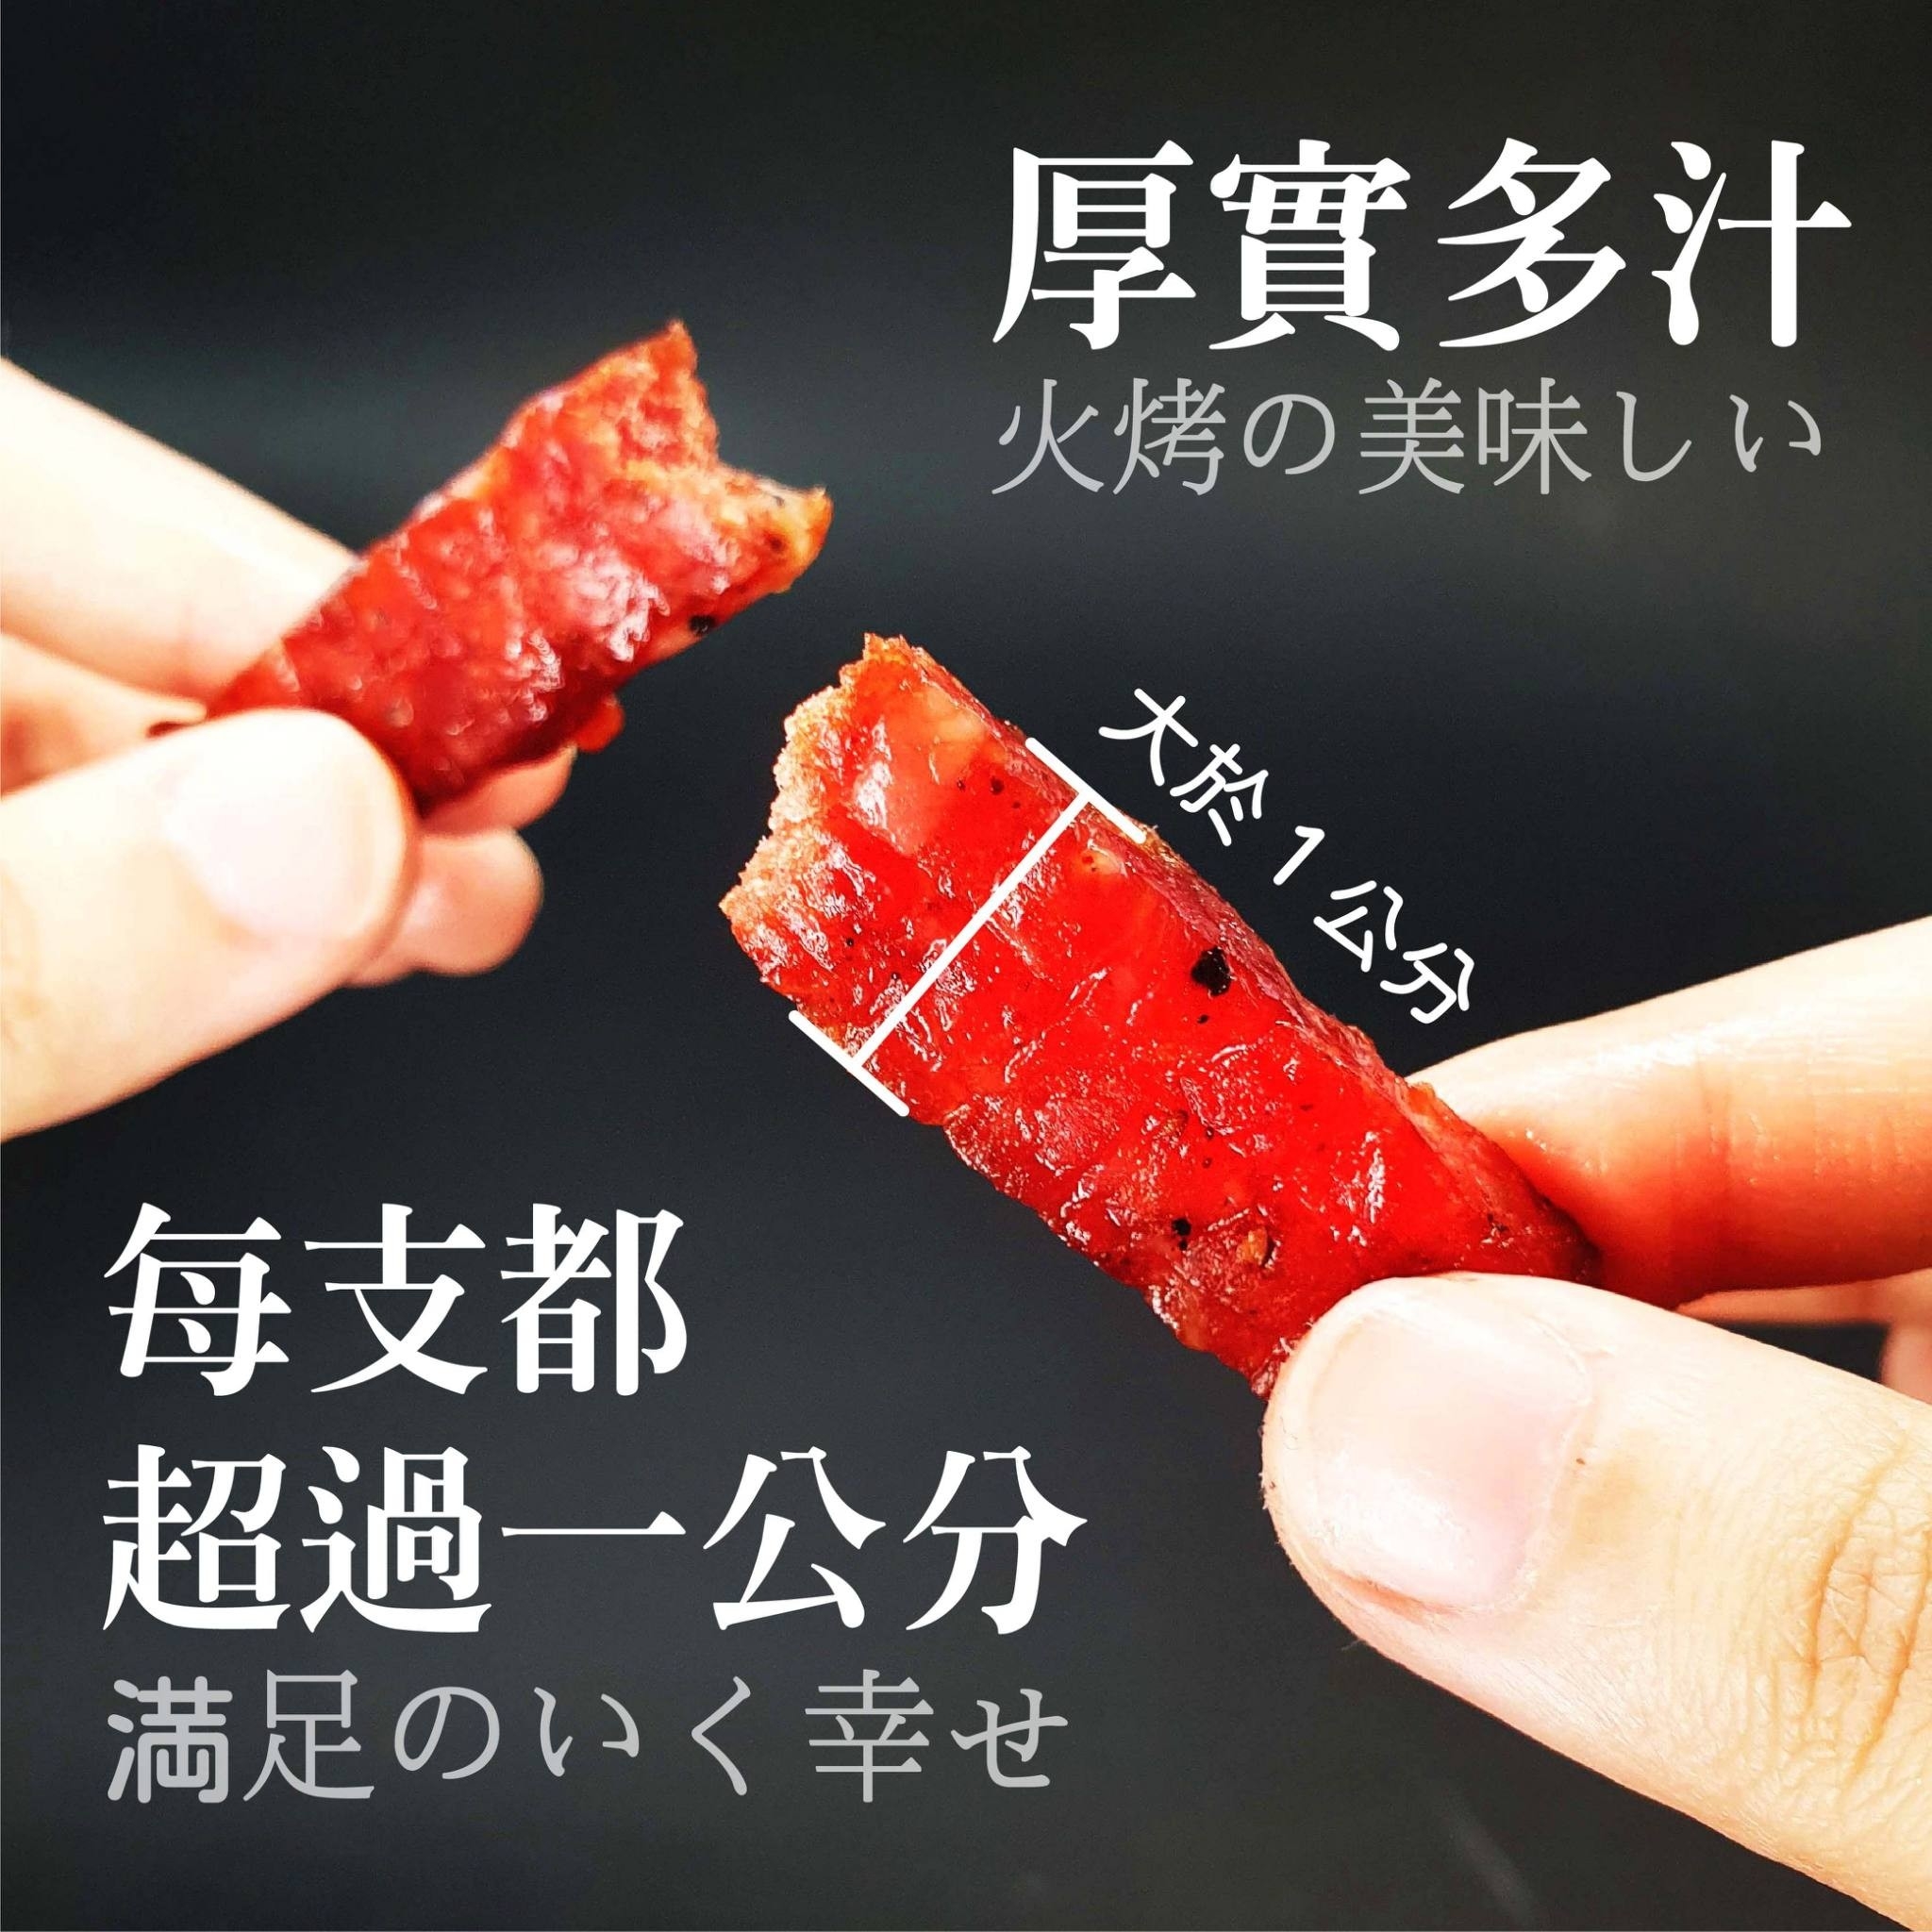 多汁鮮嫩蜜汁筷子豬肉條80g 真空獨立包裝